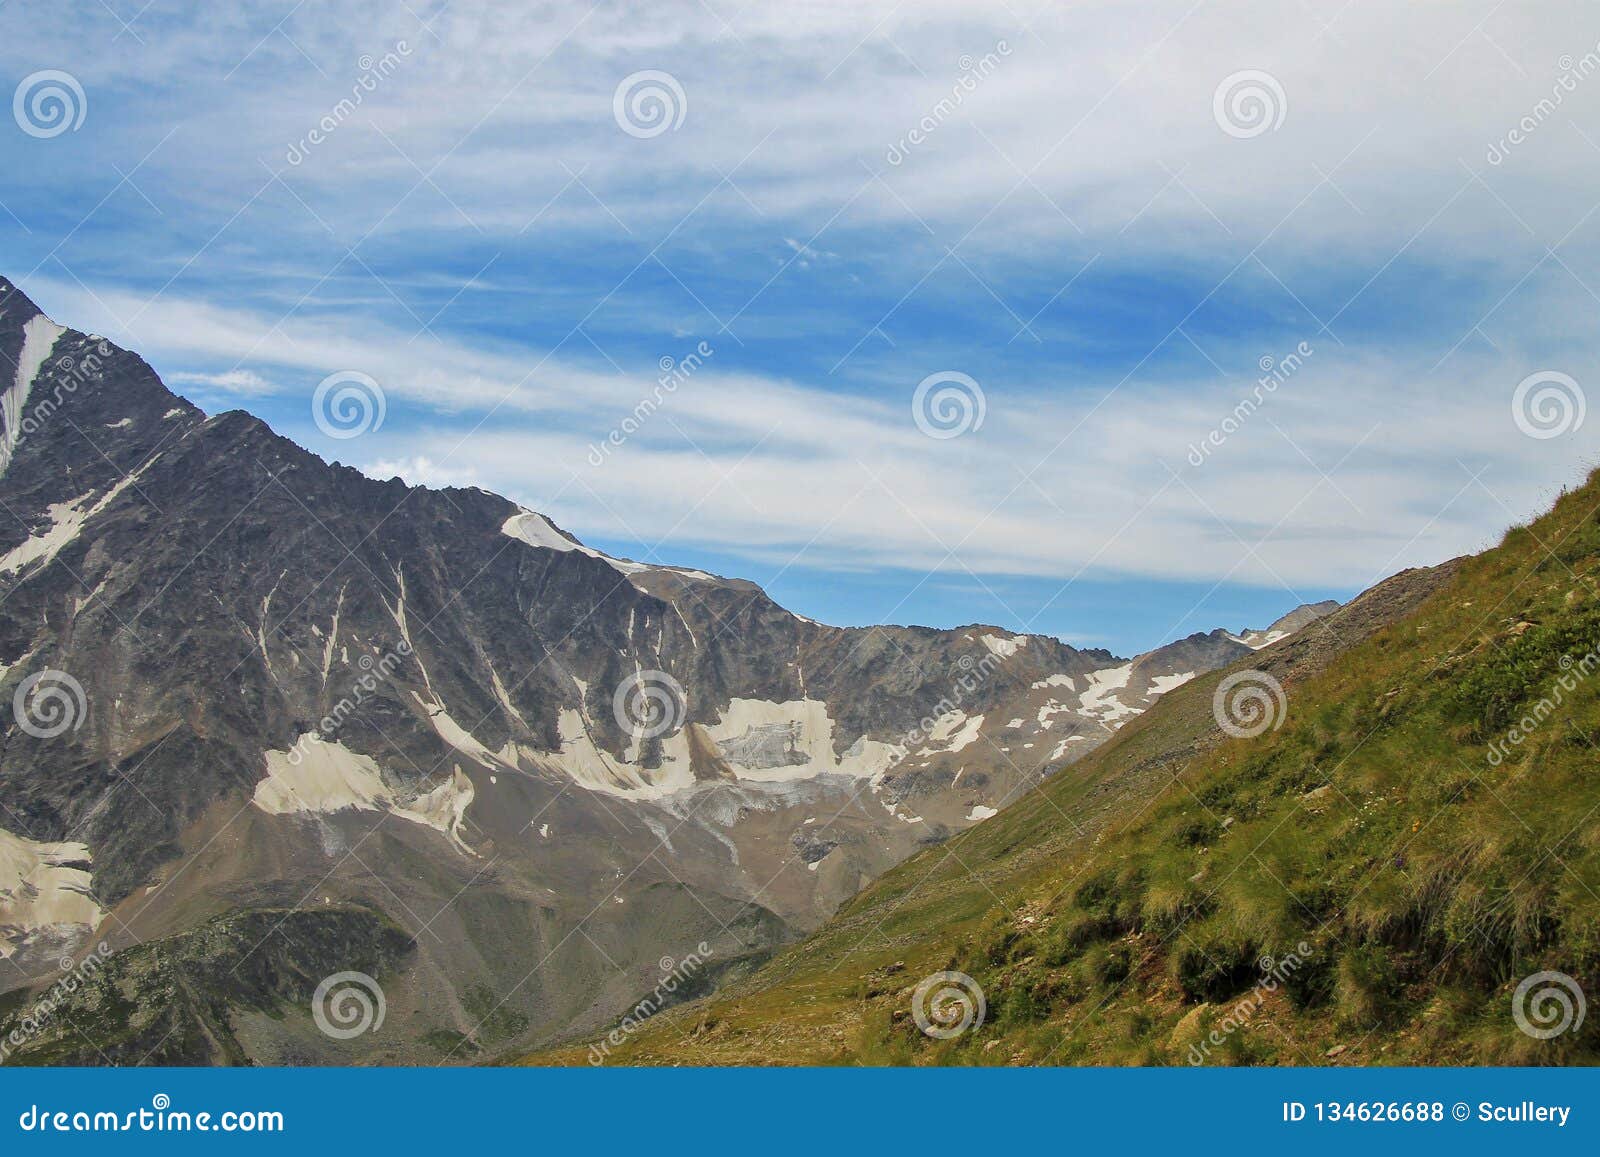 Caucasus Mountains Summertime. North Caucasus Landscape Stock Photo ...